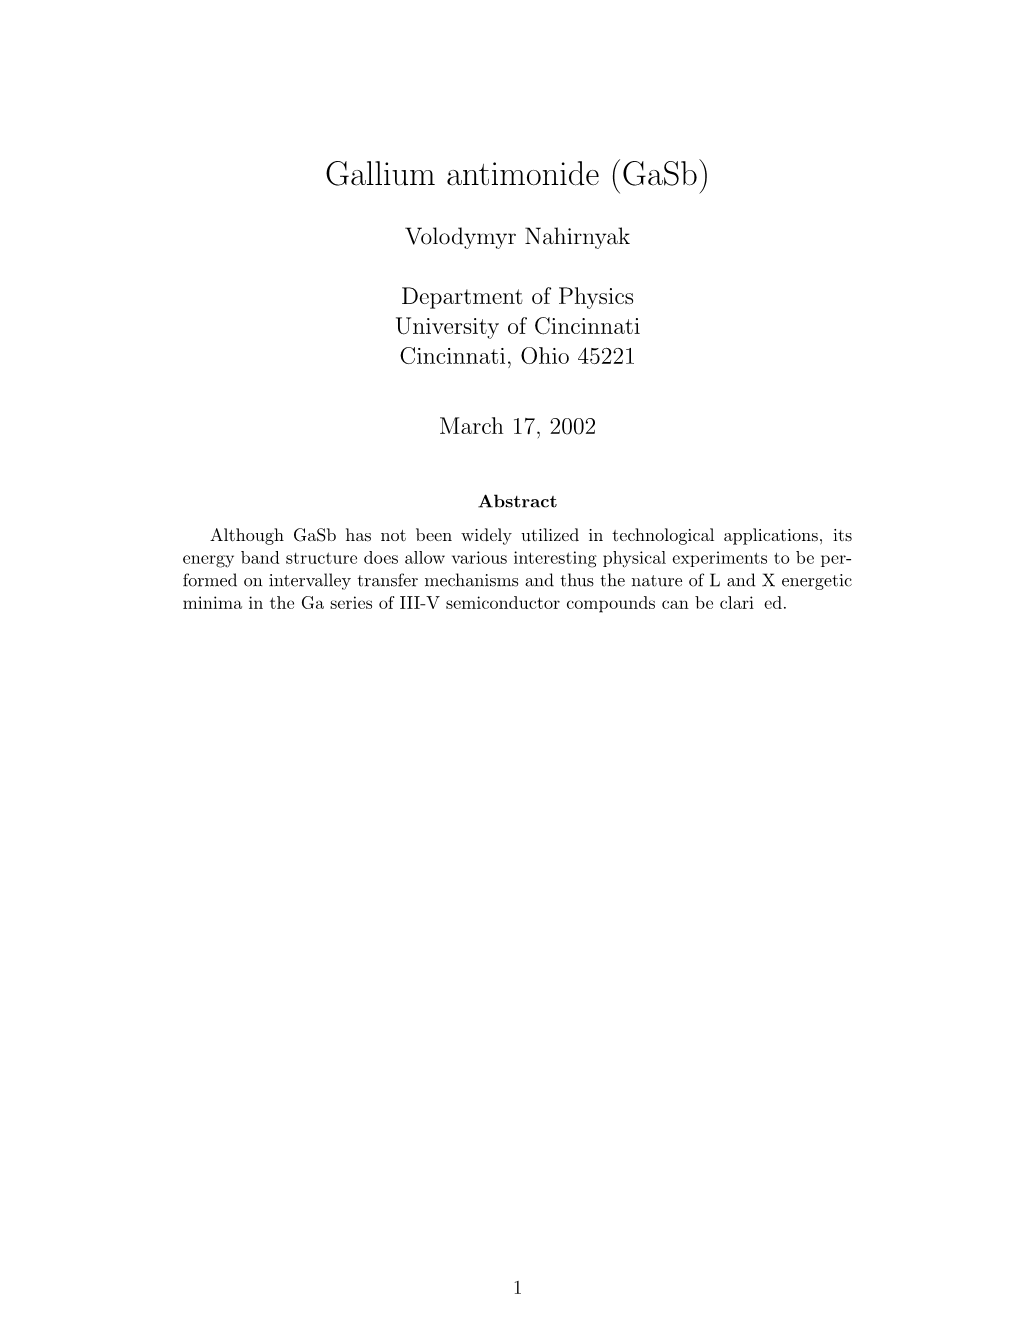 Gallium Antimonide (Gasb)